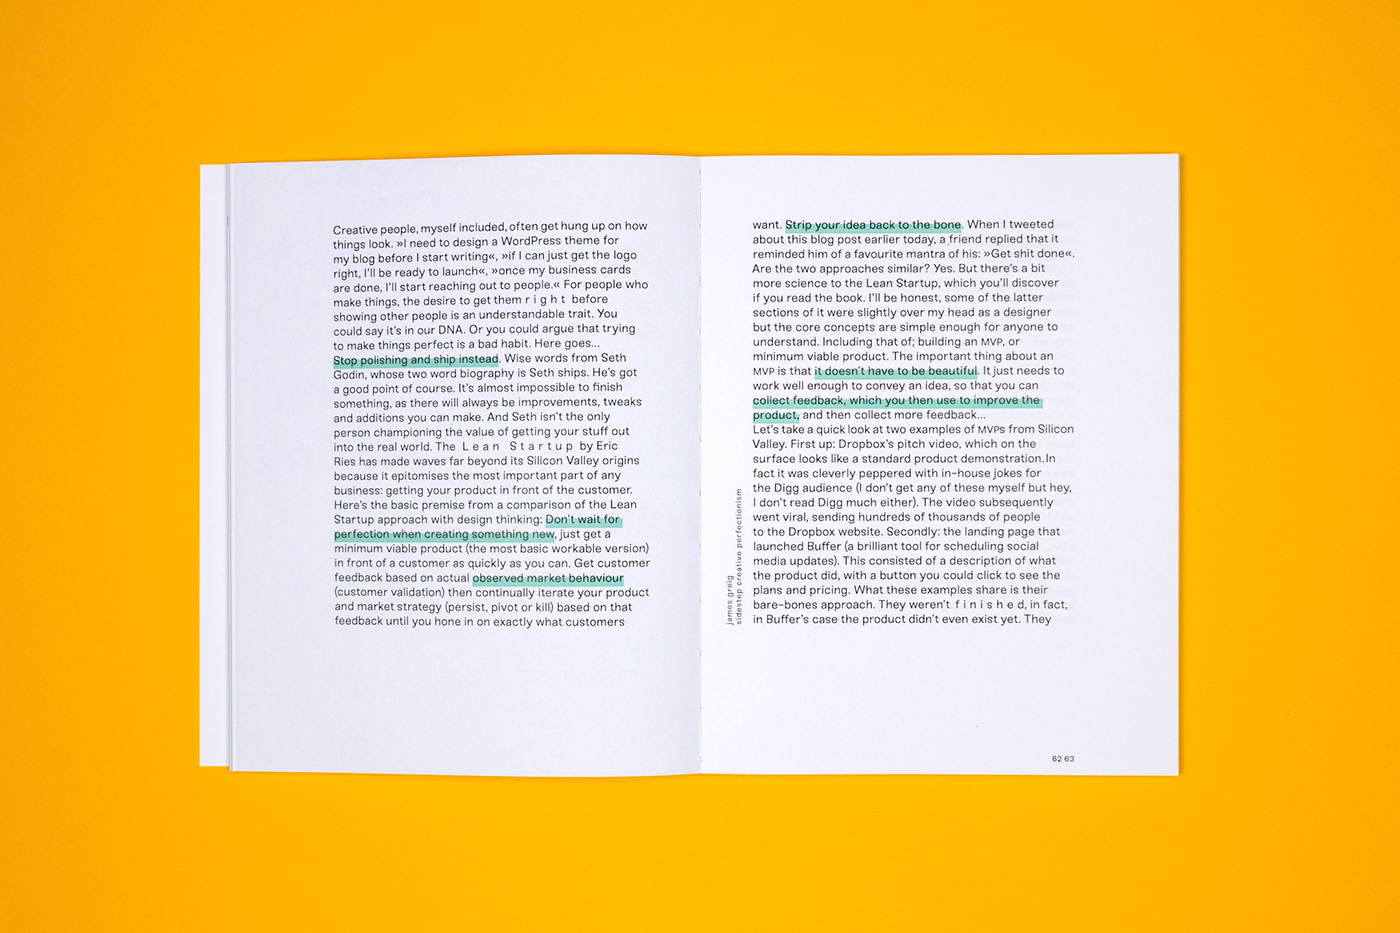 perfectionism infographics magazine typography   print bookazine Buchgestaltung Perfektionismus scheitern Kreativbranche